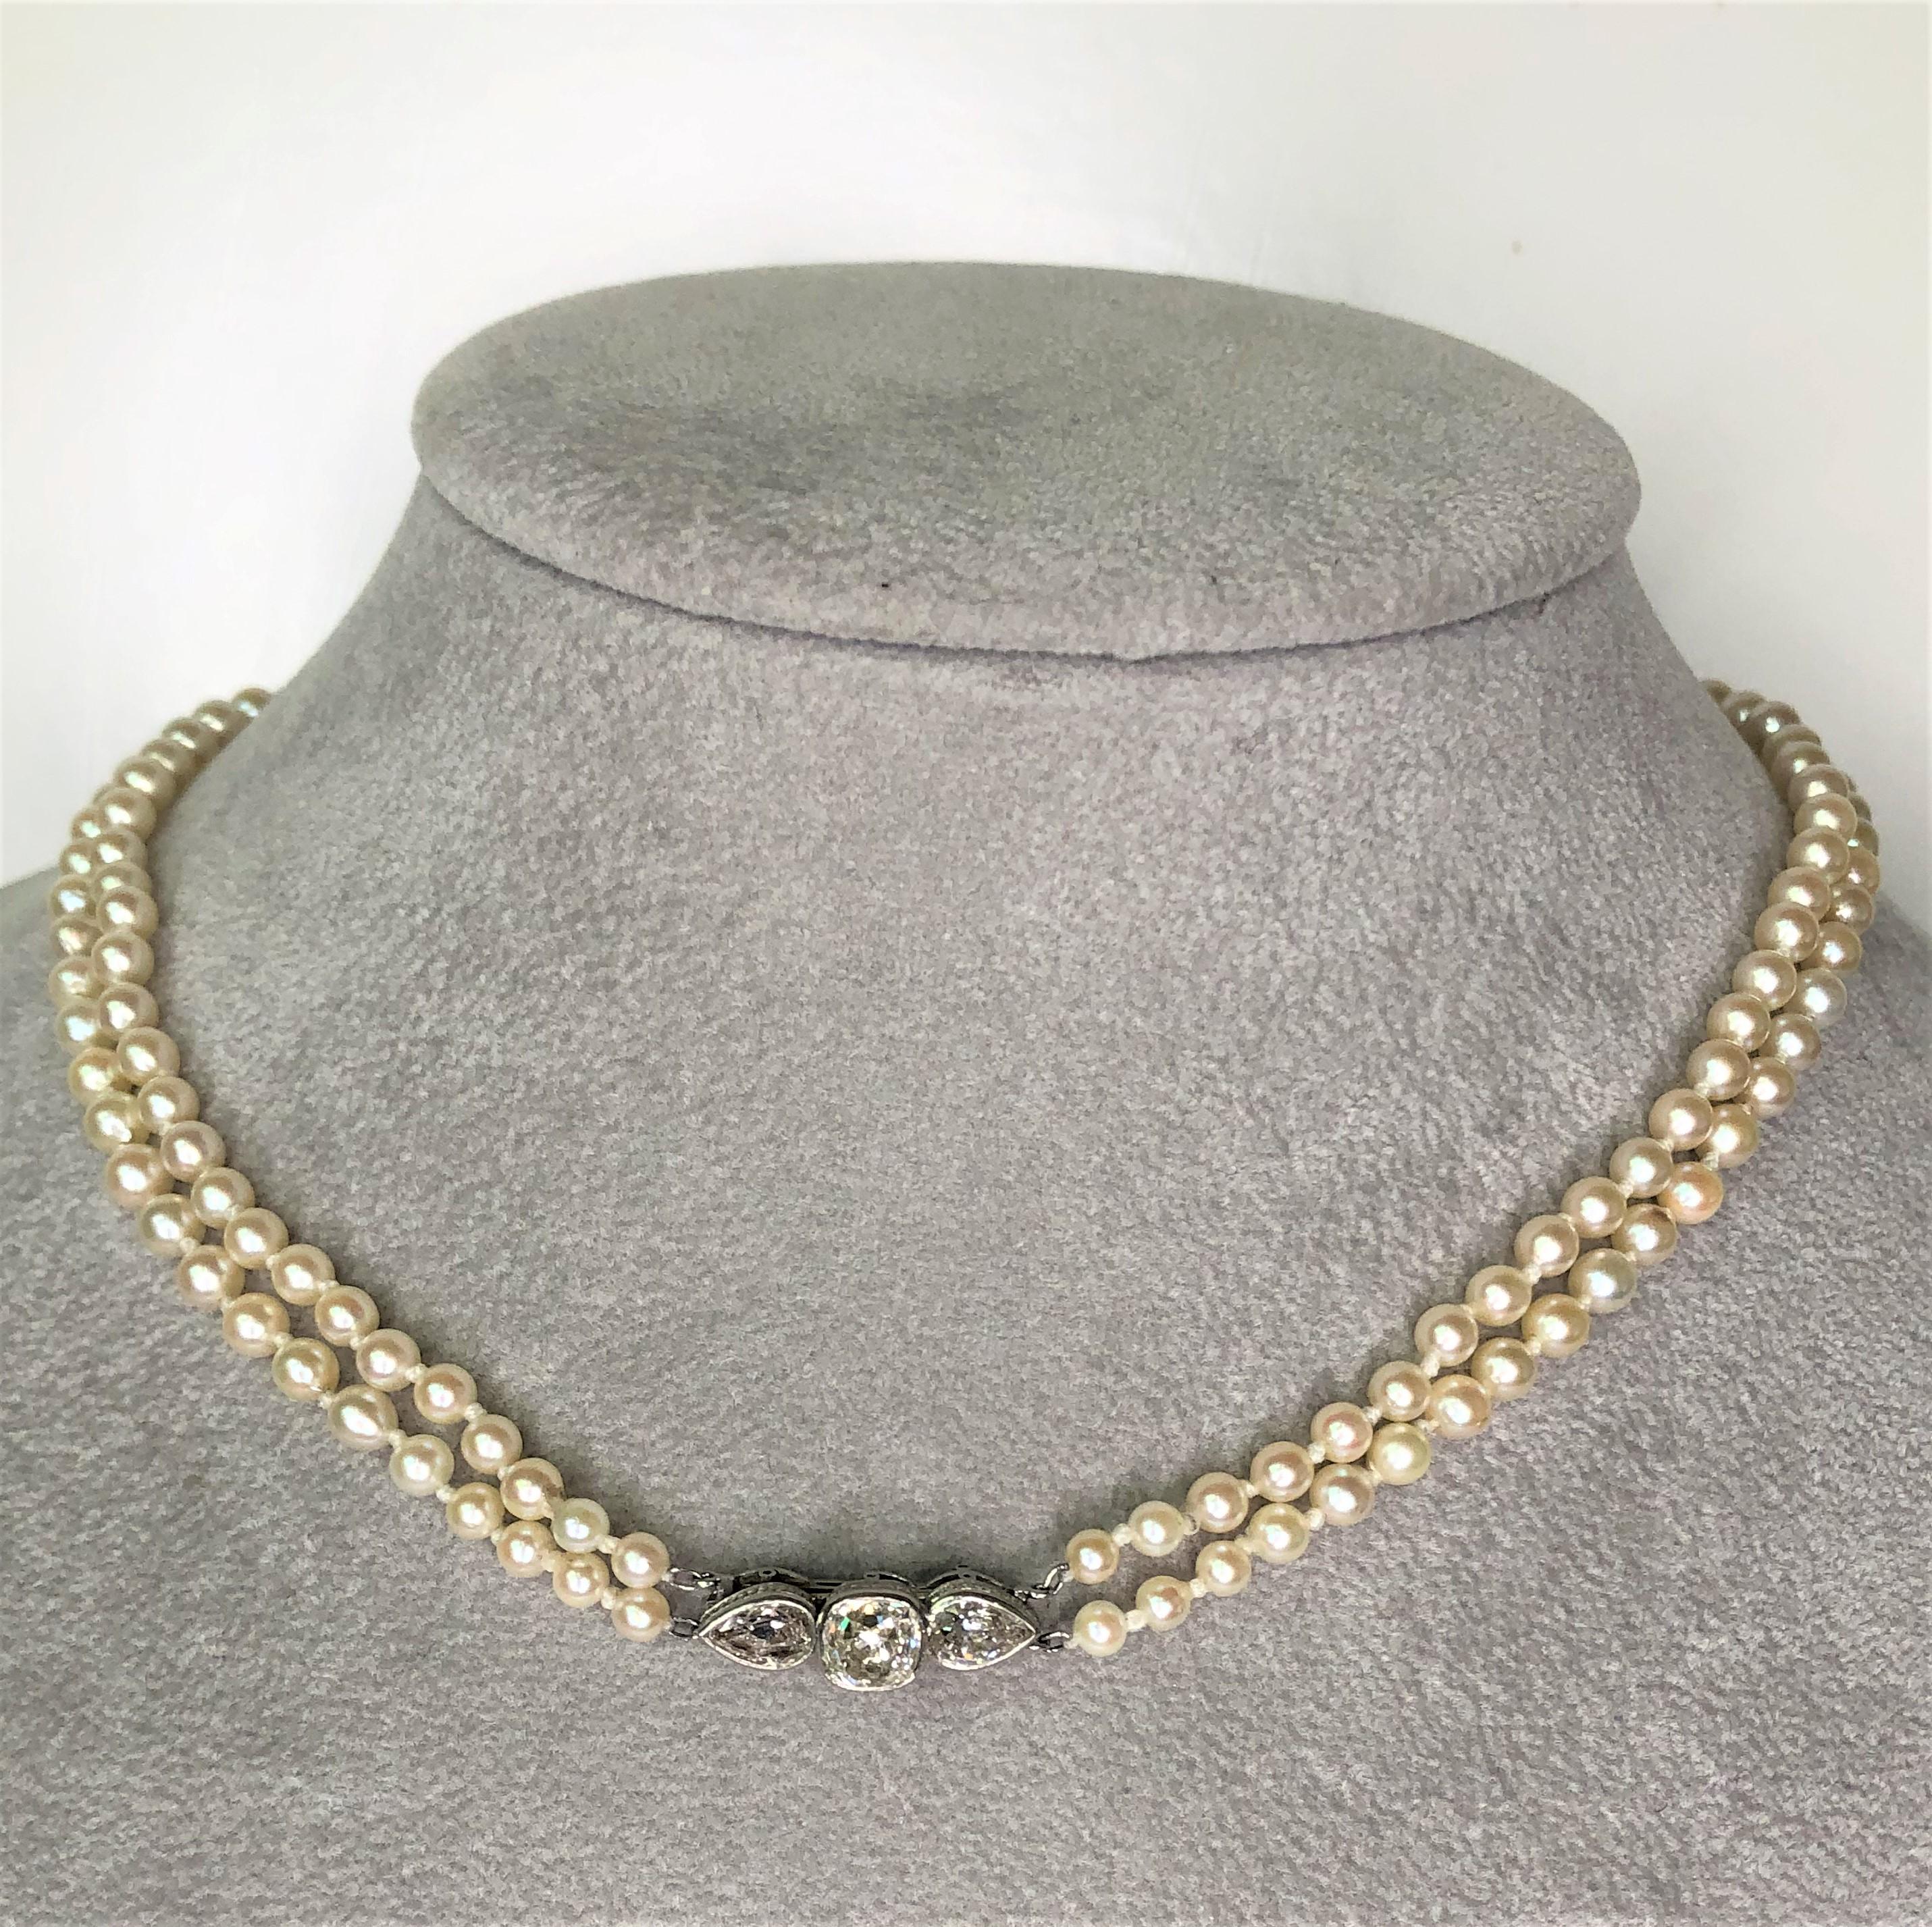 Diese wunderbare Halskette ist einzigartig; mit wunderschönen glänzenden Diamanten und zwei Strängen runder Perlen ist sie ein Muss für jeden!
Zwei abgestufte Zuchtperlenstränge mit Diamantschließe, ca. 16 Zoll Gesamtlänge.
Knoten zwischen jeder